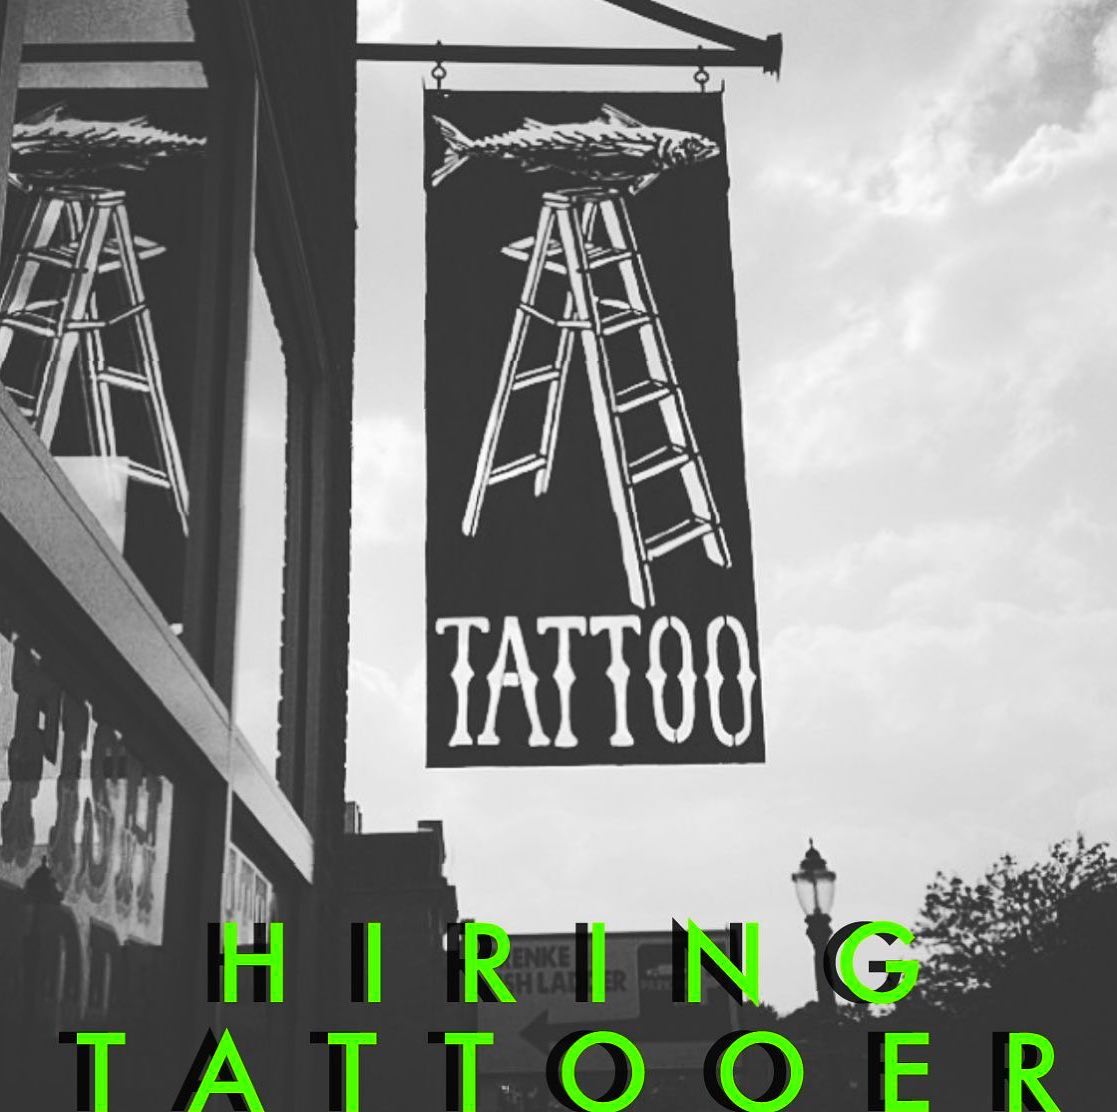 Fish Ladder Tattoo Co  Lansing MI  Tattoo  Piercing Shop  Facebook